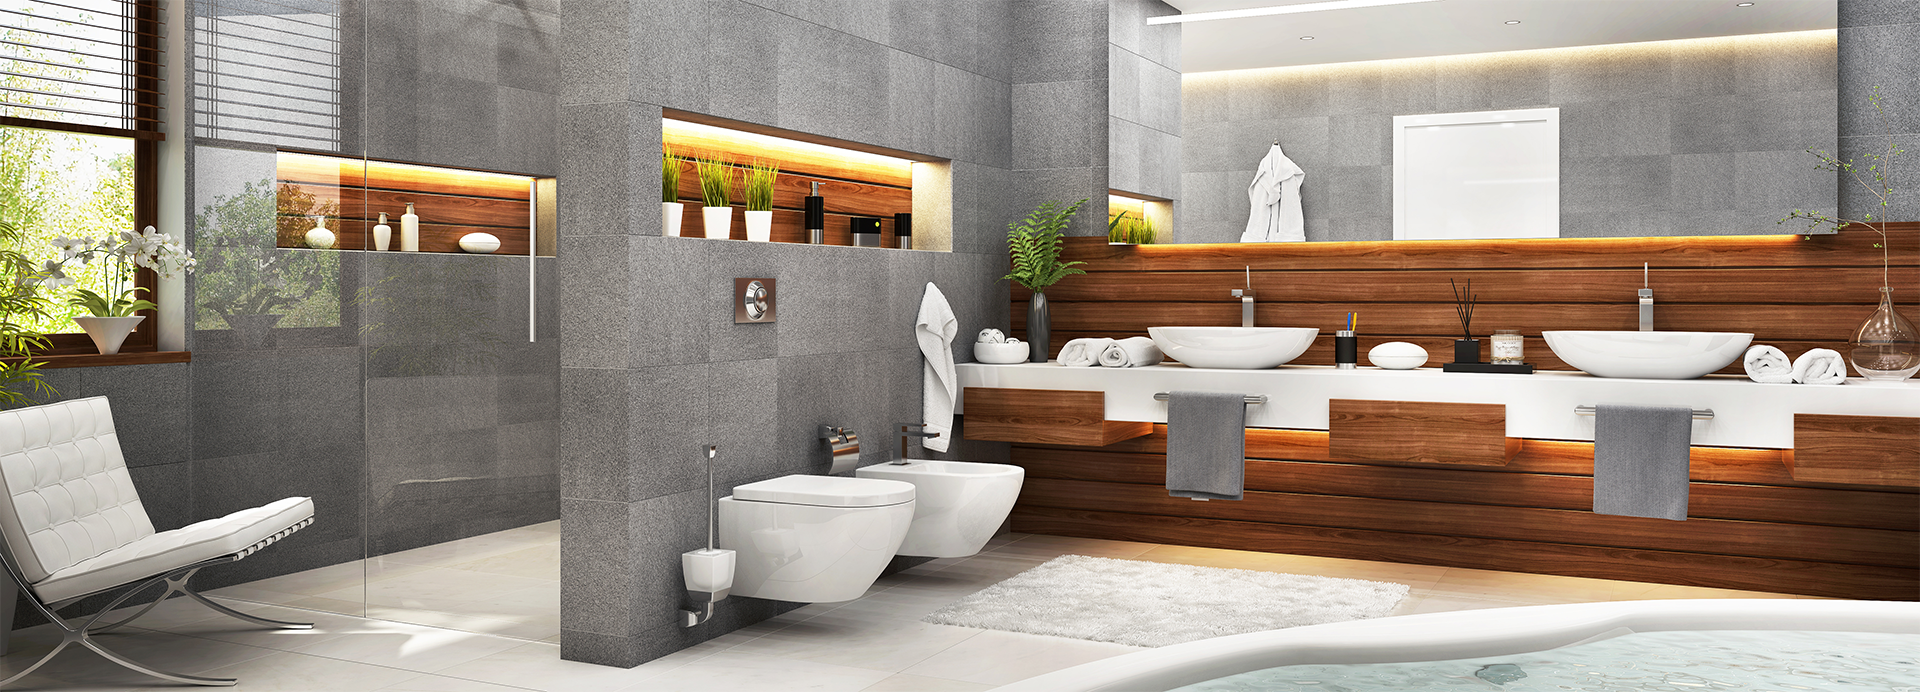 Salle de bains grise et en bois design